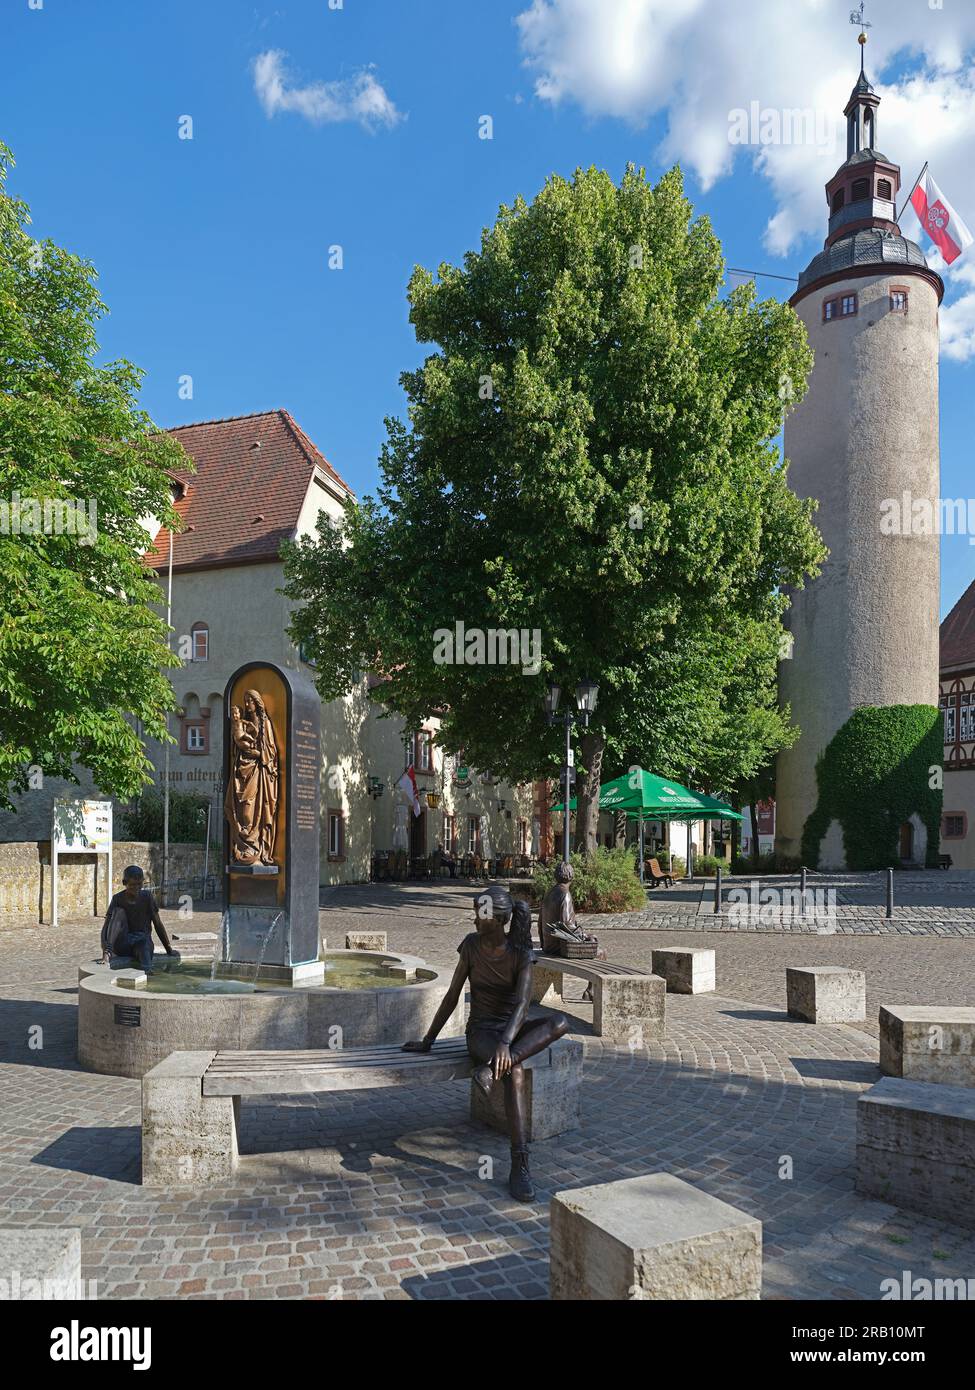 La fontana della piazza del castello è dedicata a Tilman Riemenschneider e alla sua Madonna Tauberbischofsheim (scultore Leo Wirth), Türmersturm (1280) presso il castello di Magonza elettorale, Tauberbischofsheim, Baden-Württemberg, Germania. Foto Stock